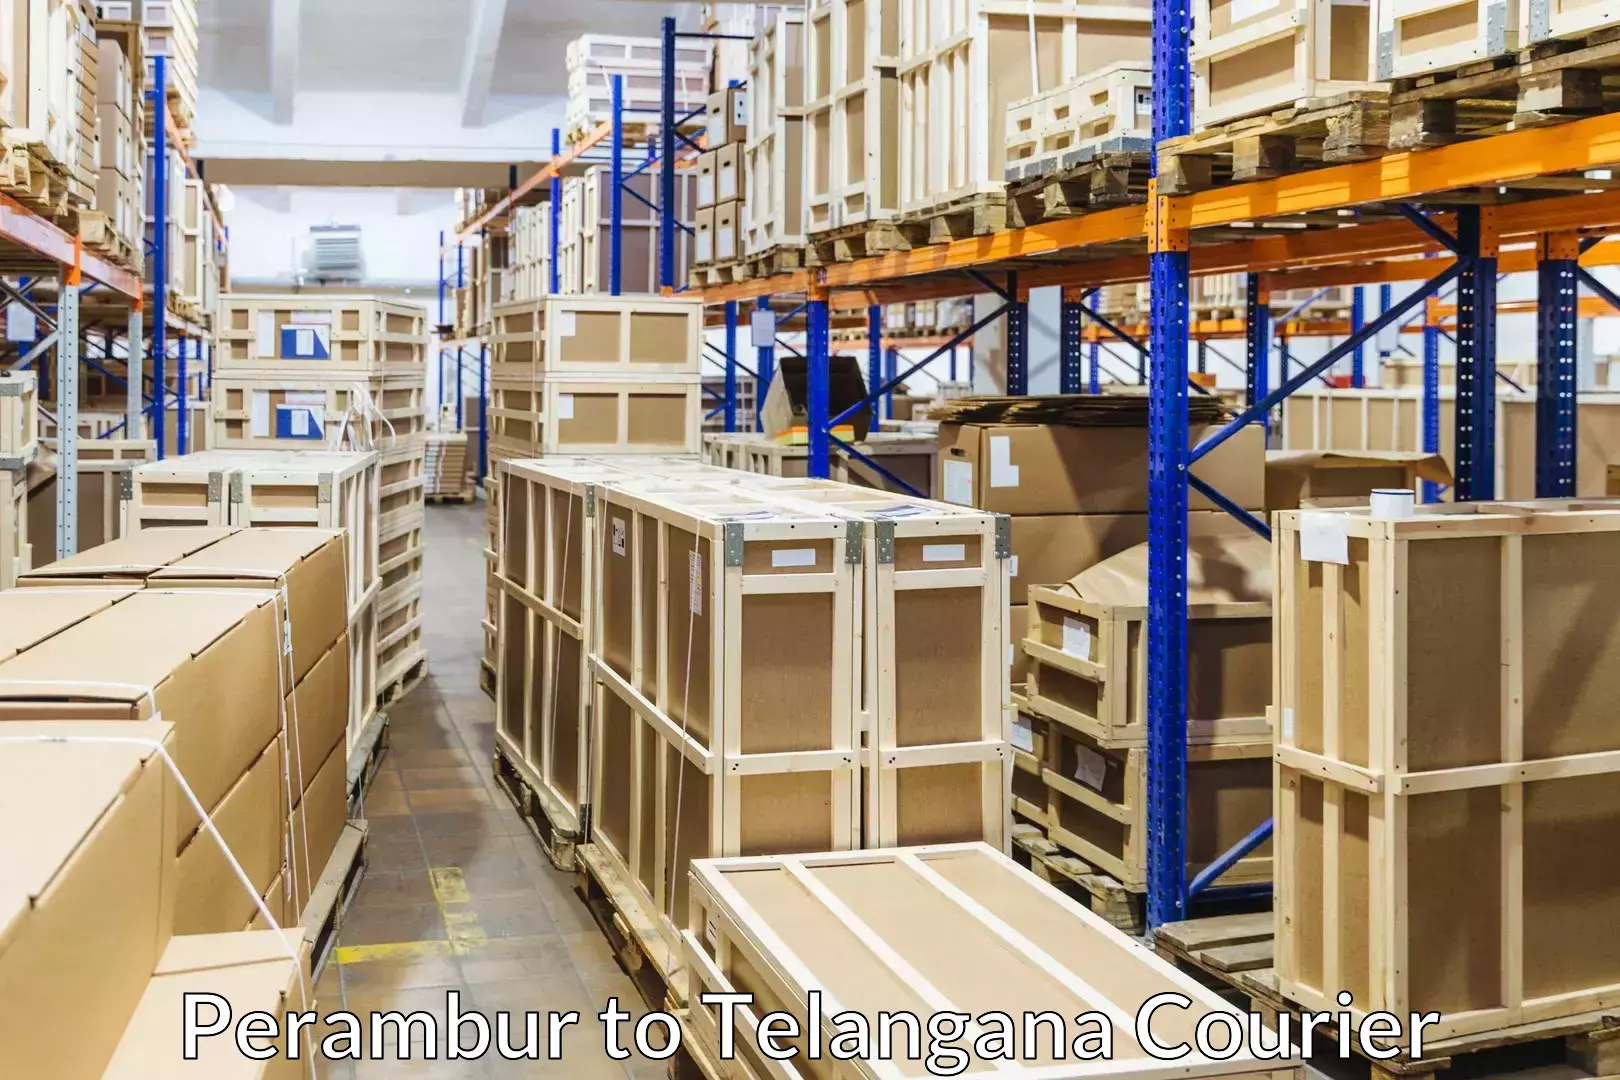 Efficient furniture transport Perambur to Yerrupalem